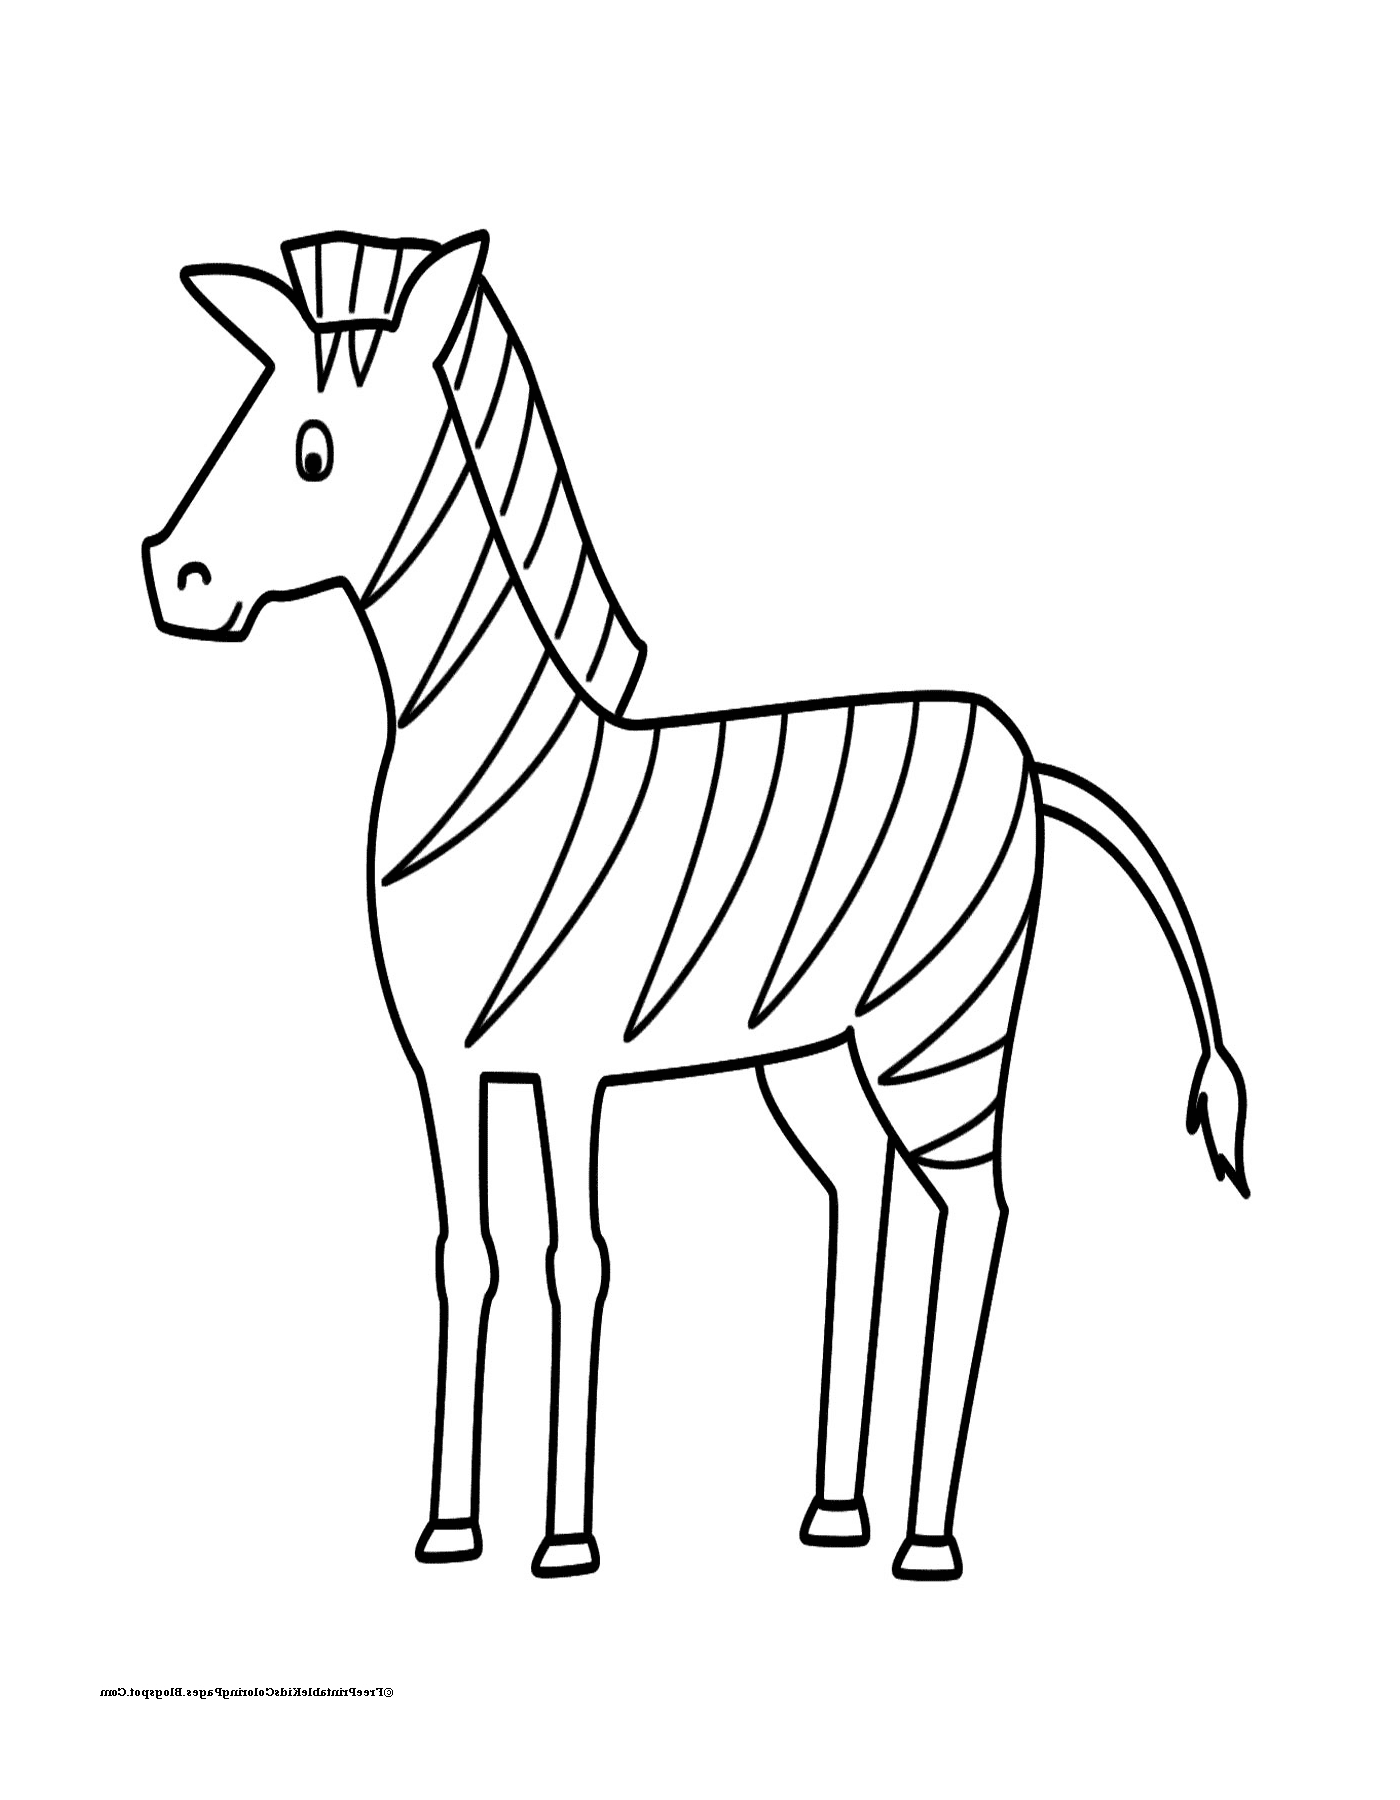  zebra gananciosa e tranquila 